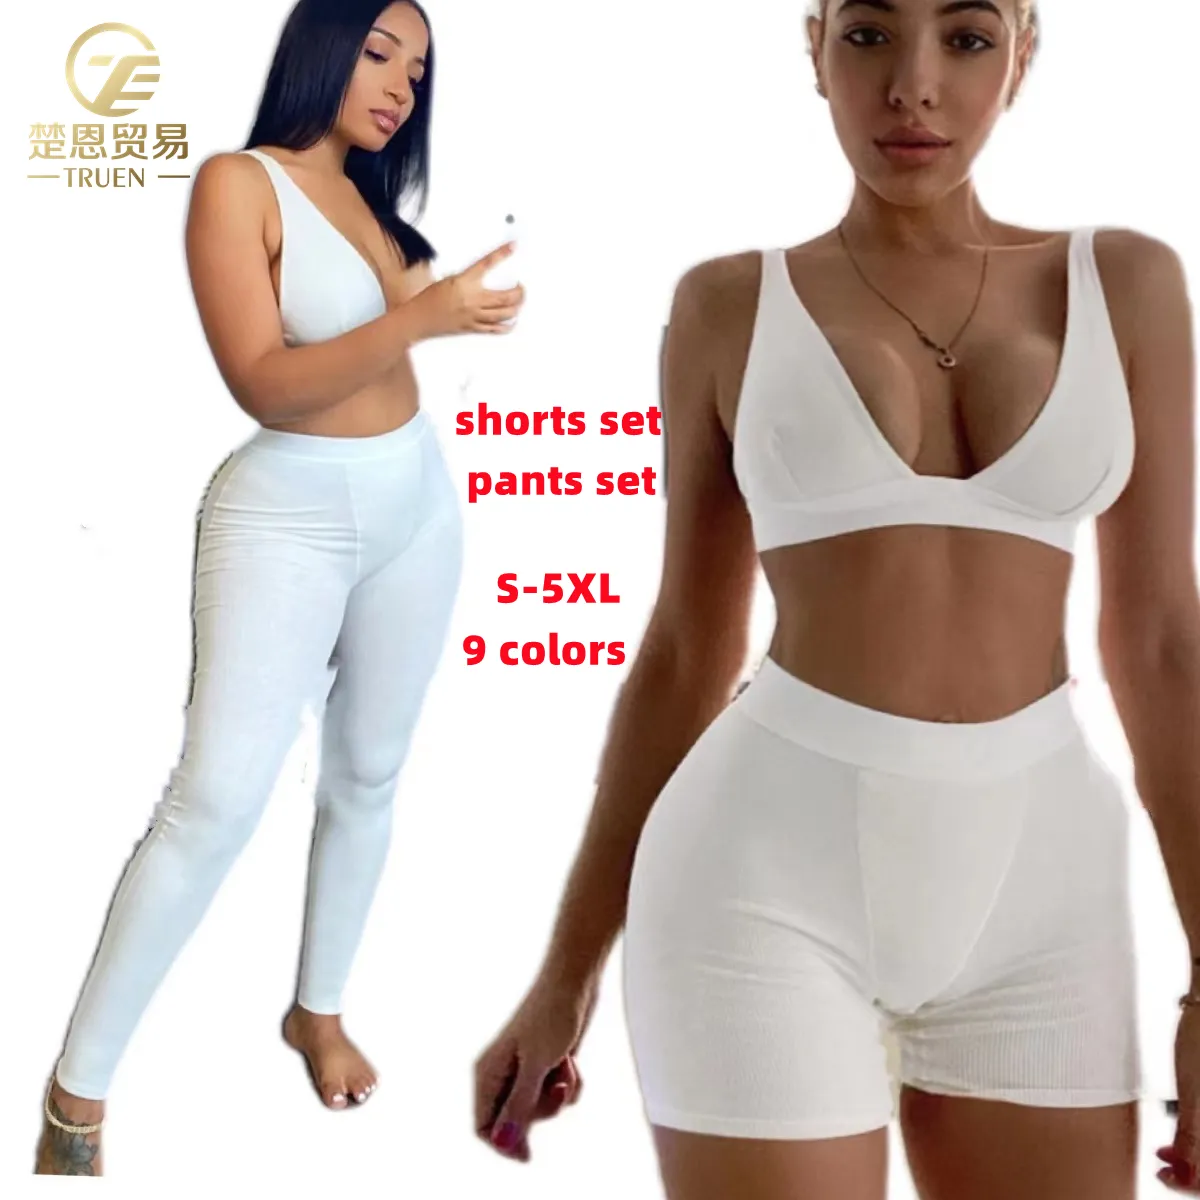 S-5XL 2023 कस्टम महिलाओं के वस्त्र दो 2 टुकड़ा शॉर्ट्स पैंट सेट सहज legging ब्रा skims लाउंज पहनने योग skims जिम फिटनेस सेट